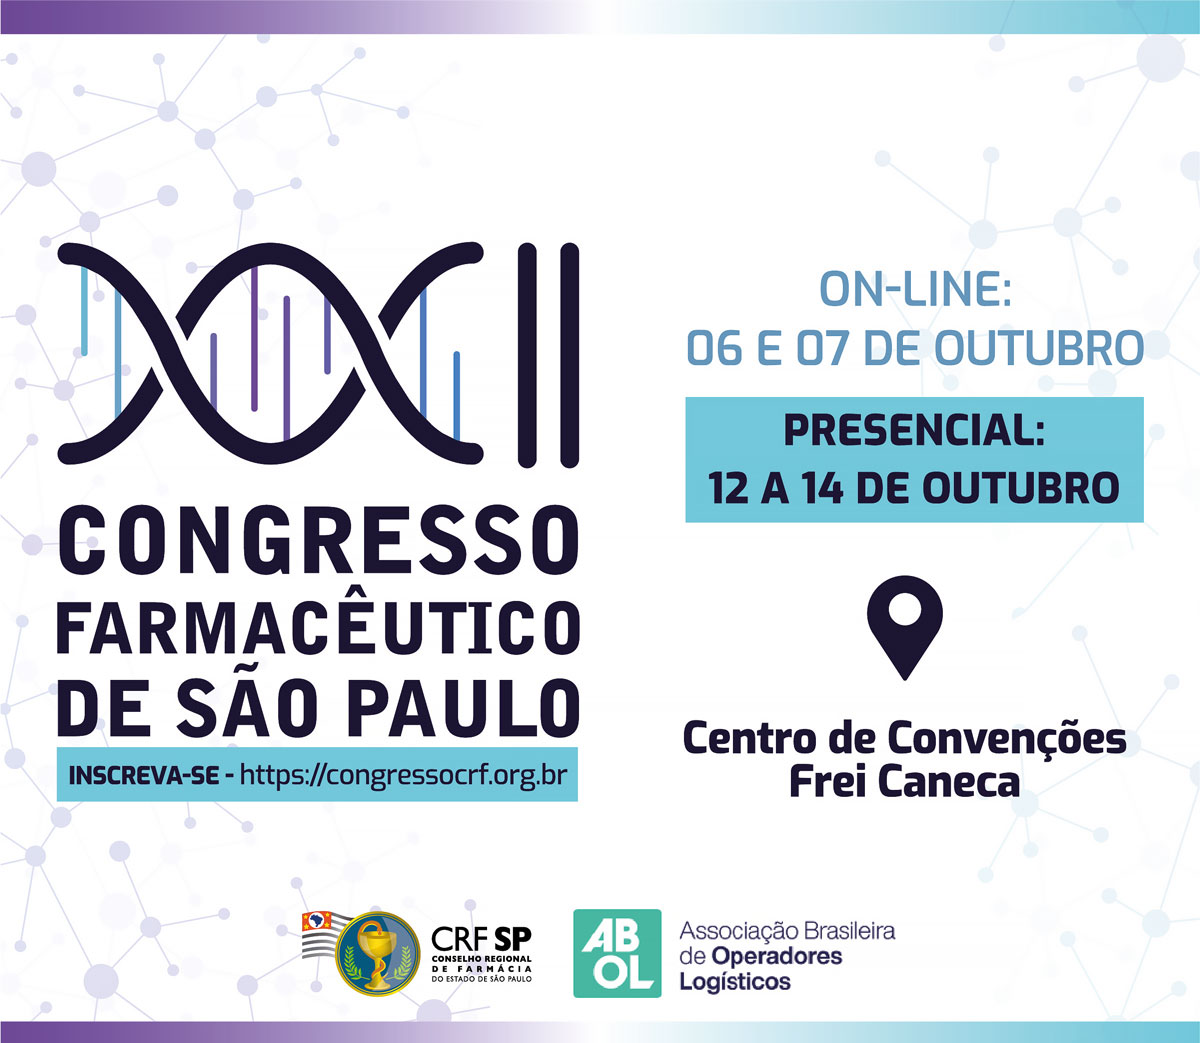  ABOL estará presente no XXII Congresso Farmacêutico de São Paulo